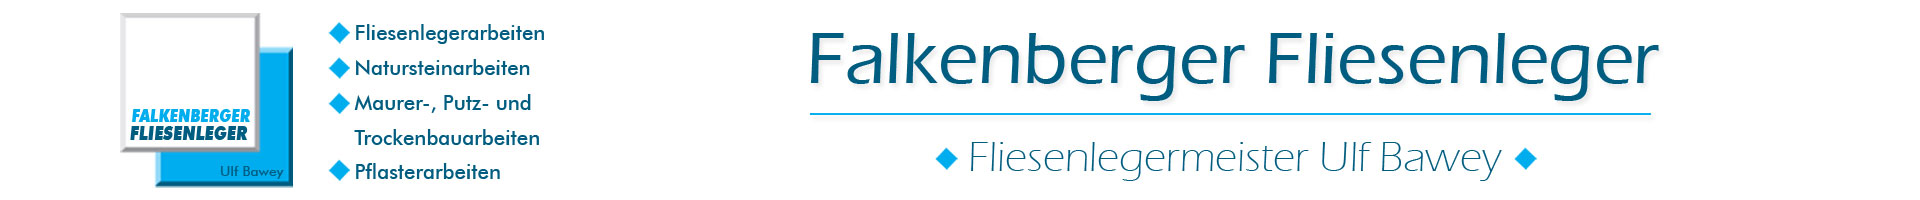 (c) Falkenberger-fliesenleger.de